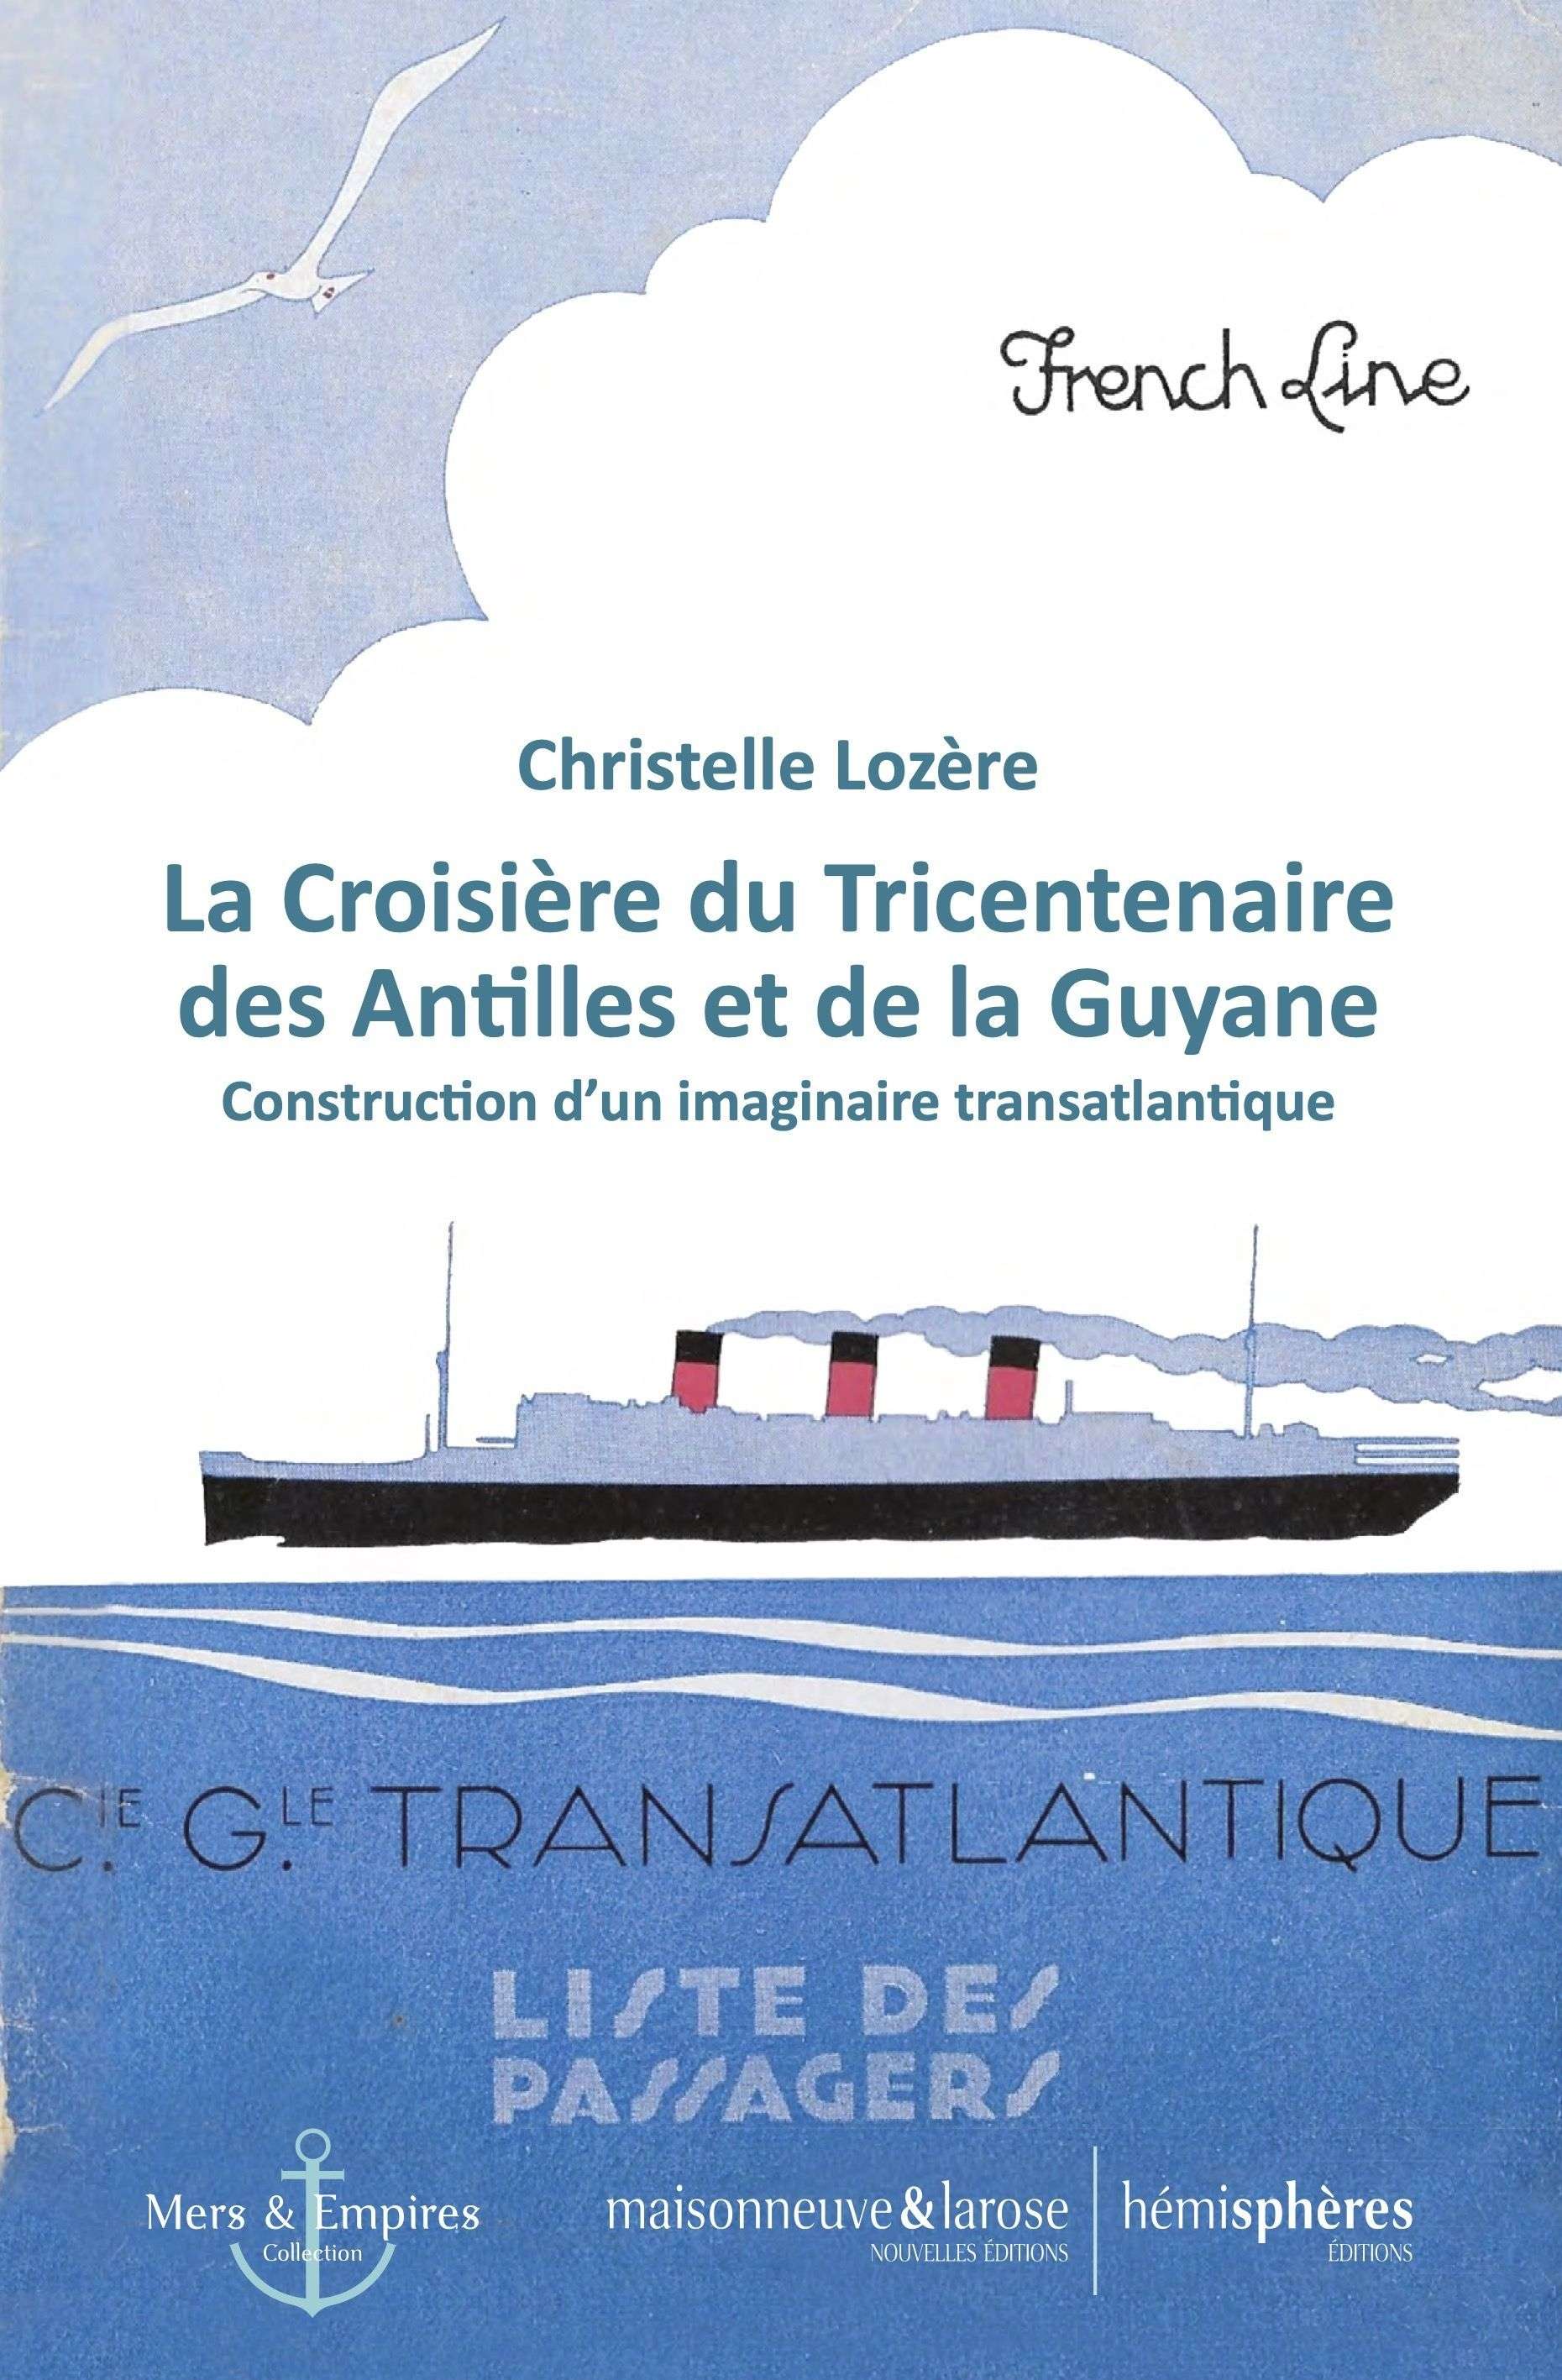 couverture du livre "La Croisière du Tricentenaire des Antilles et de la Guyane". 